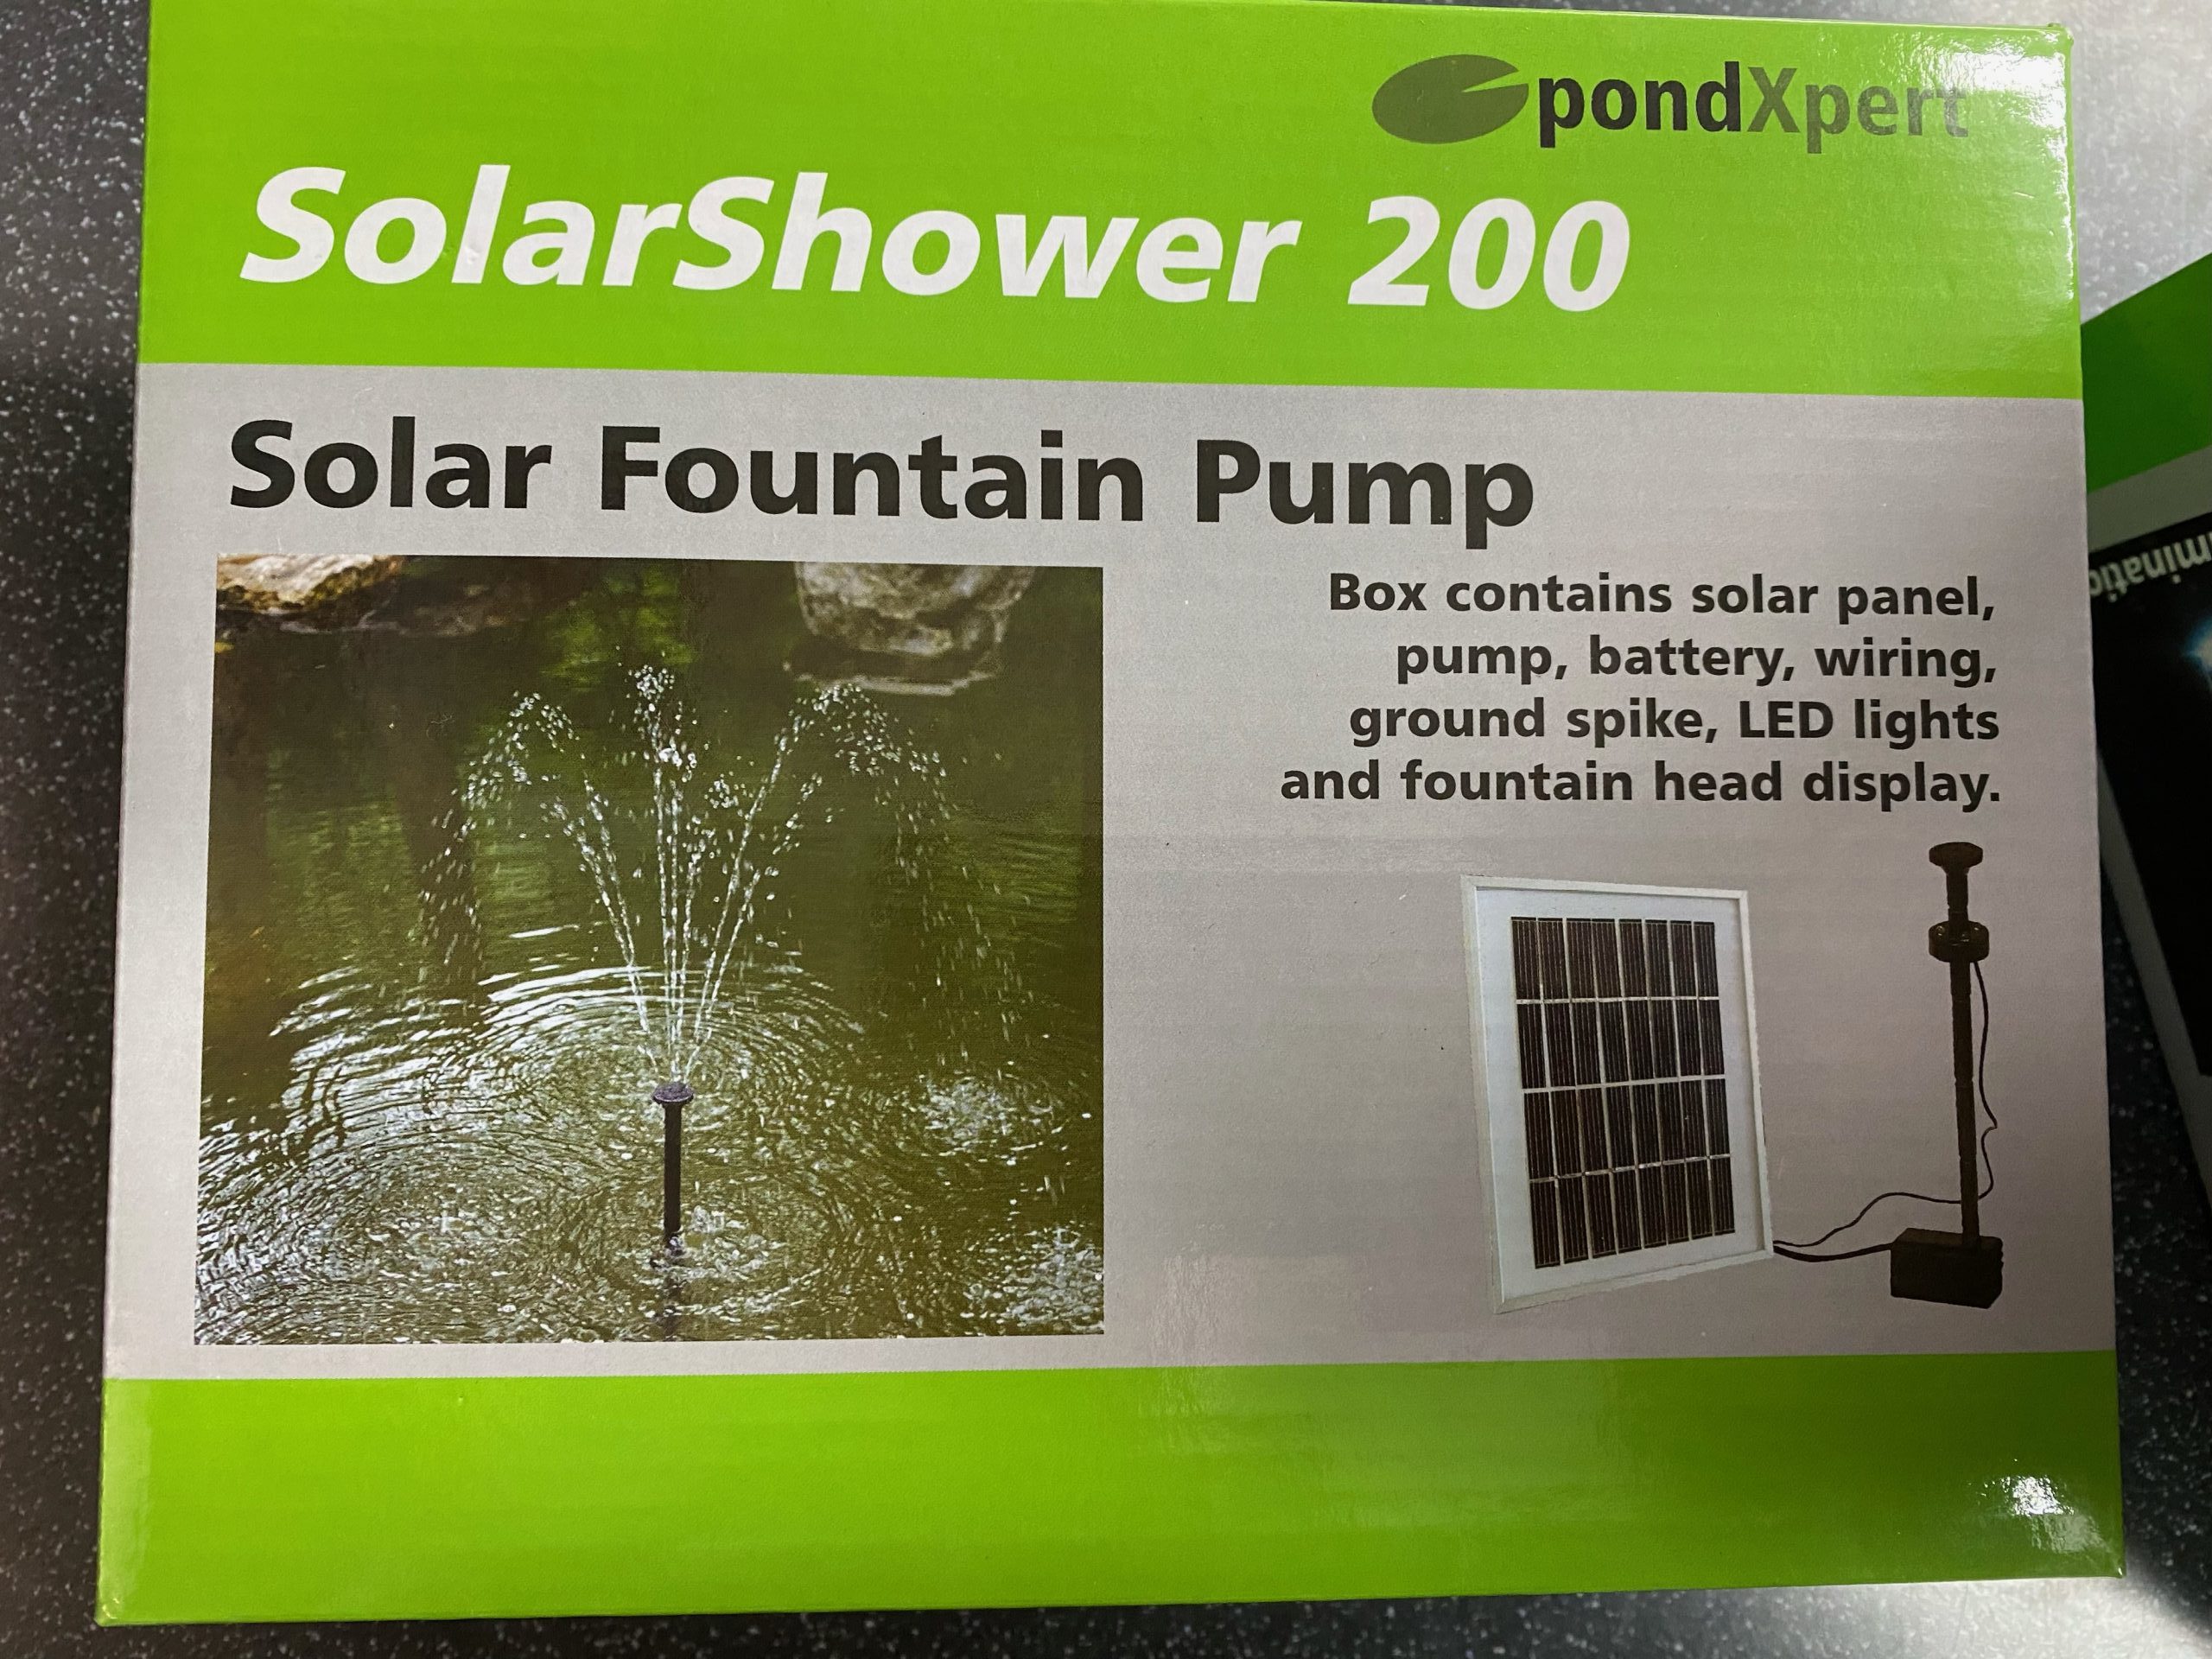 Solar Shower 200